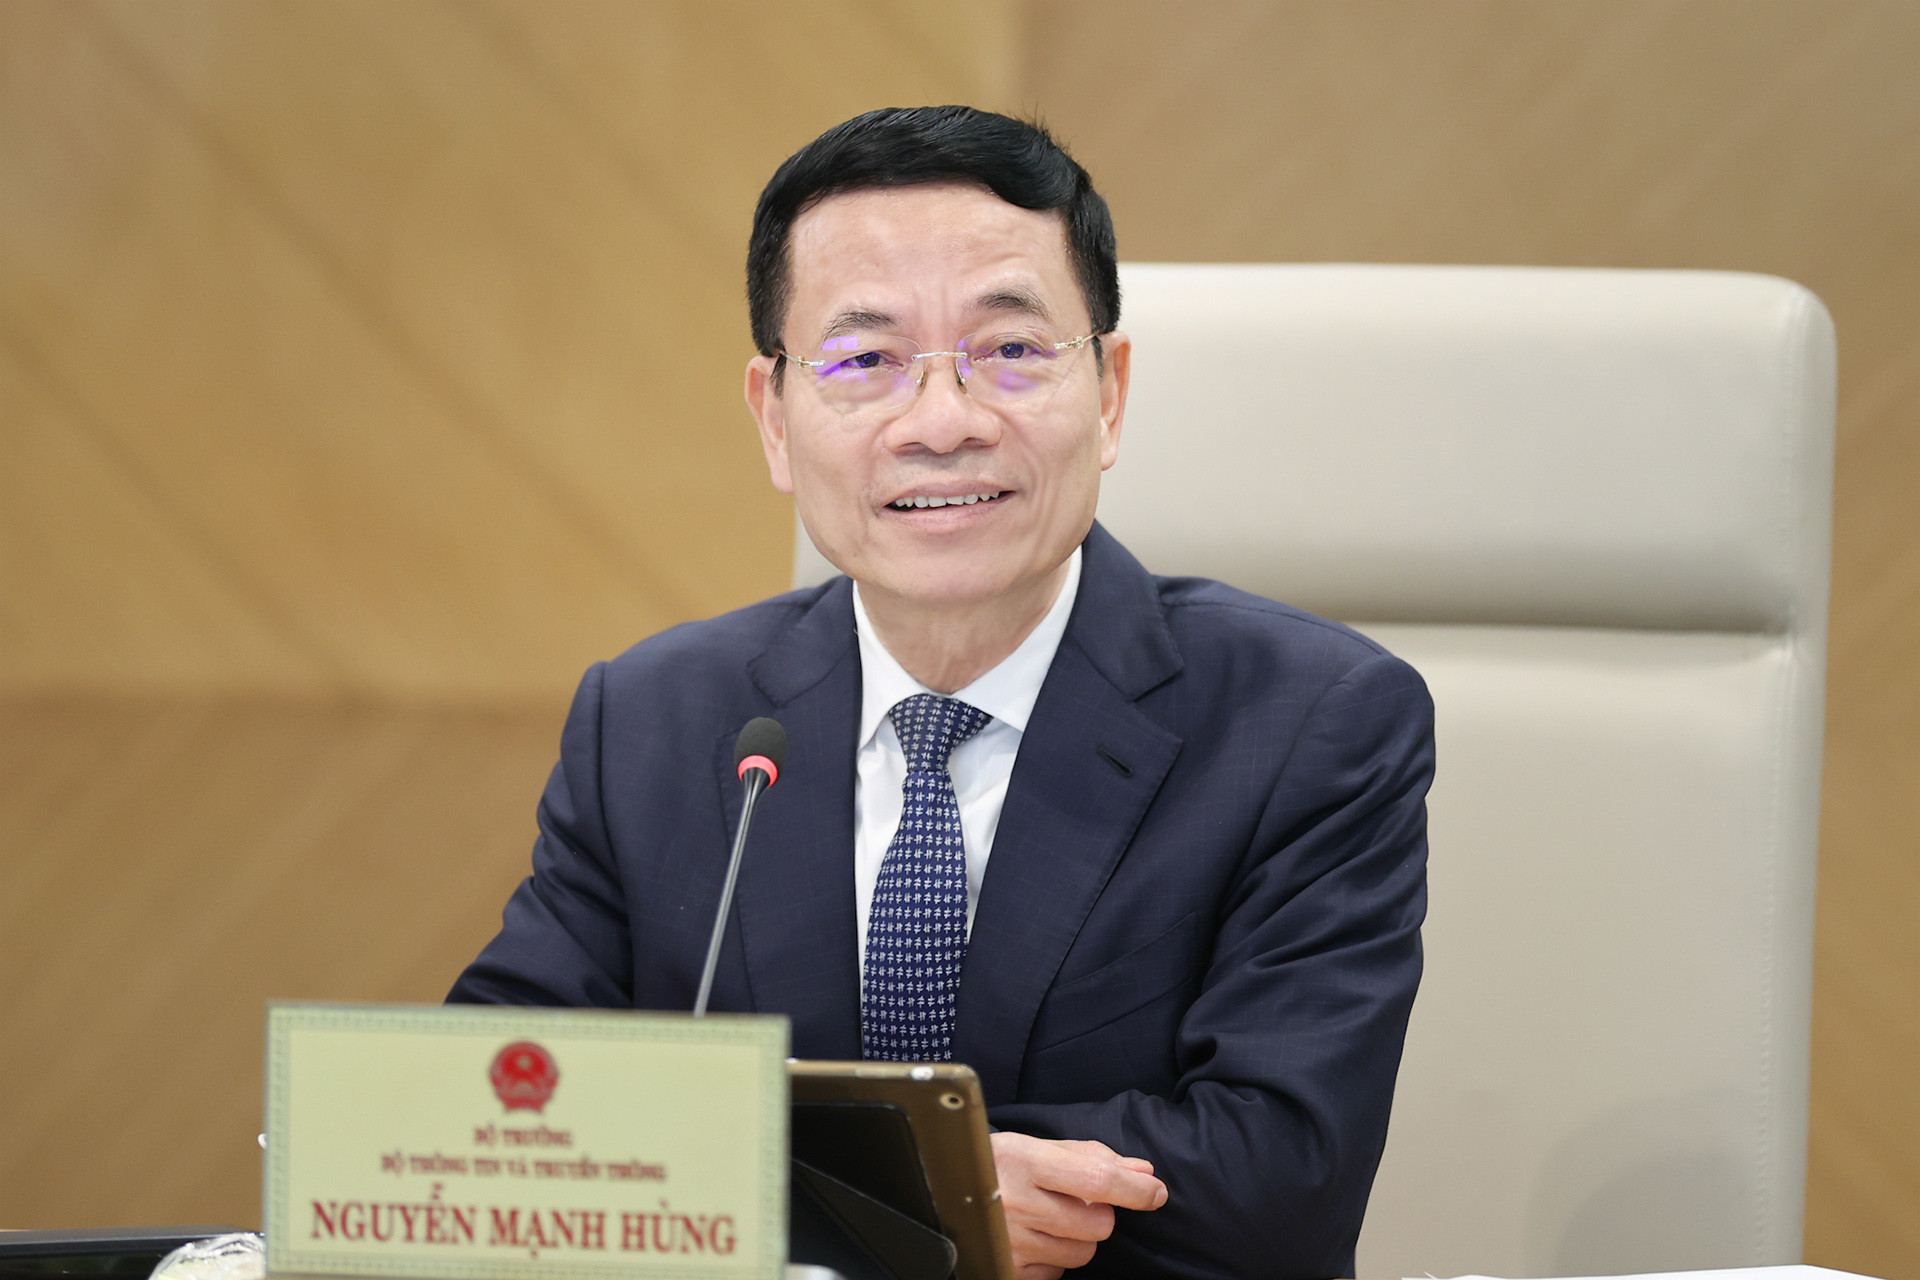 Bộ trưởng Nguyễn Mạnh Hùng: Doanh nghiệp công nghệ số hãy nhận lấy một sứ mệnh quốc gia làm thành sứ mệnh của mình để dẫn dắt doanh nghiệp đi xa hơn nữa.